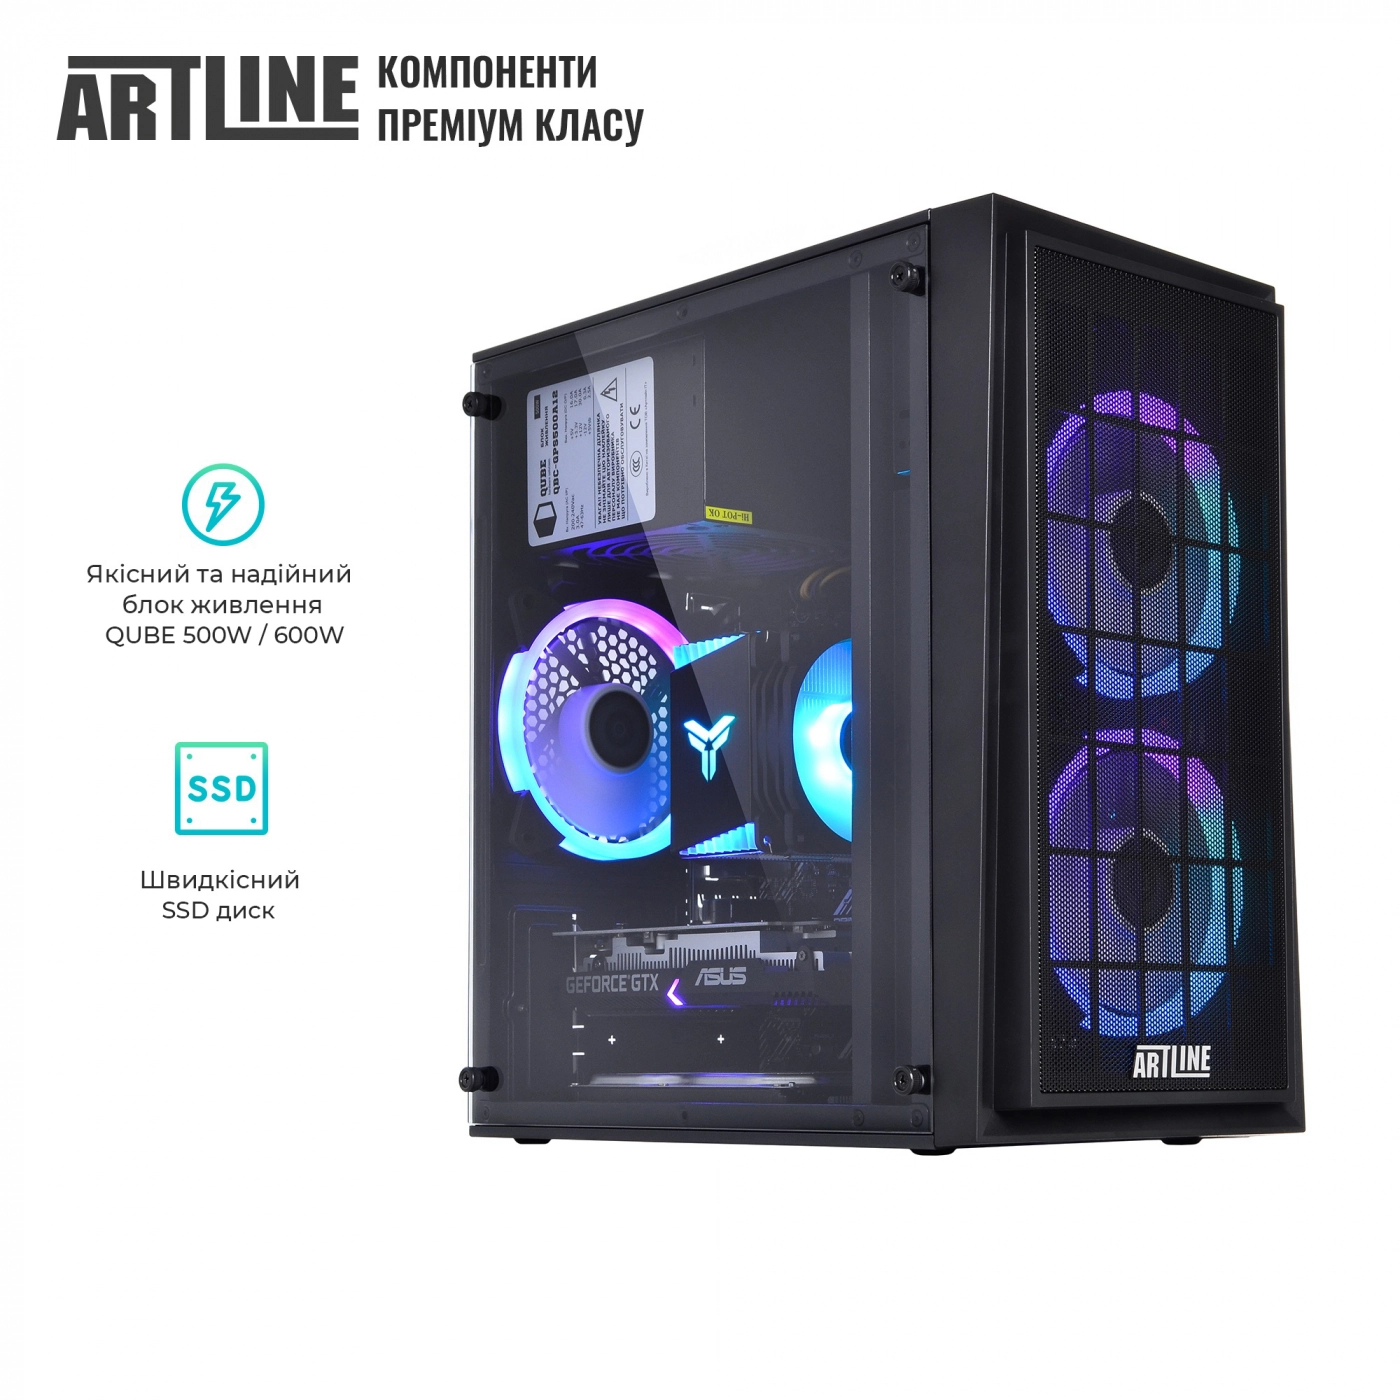 Купить Компьютер ARTLINE Gaming X42v01 - фото 8